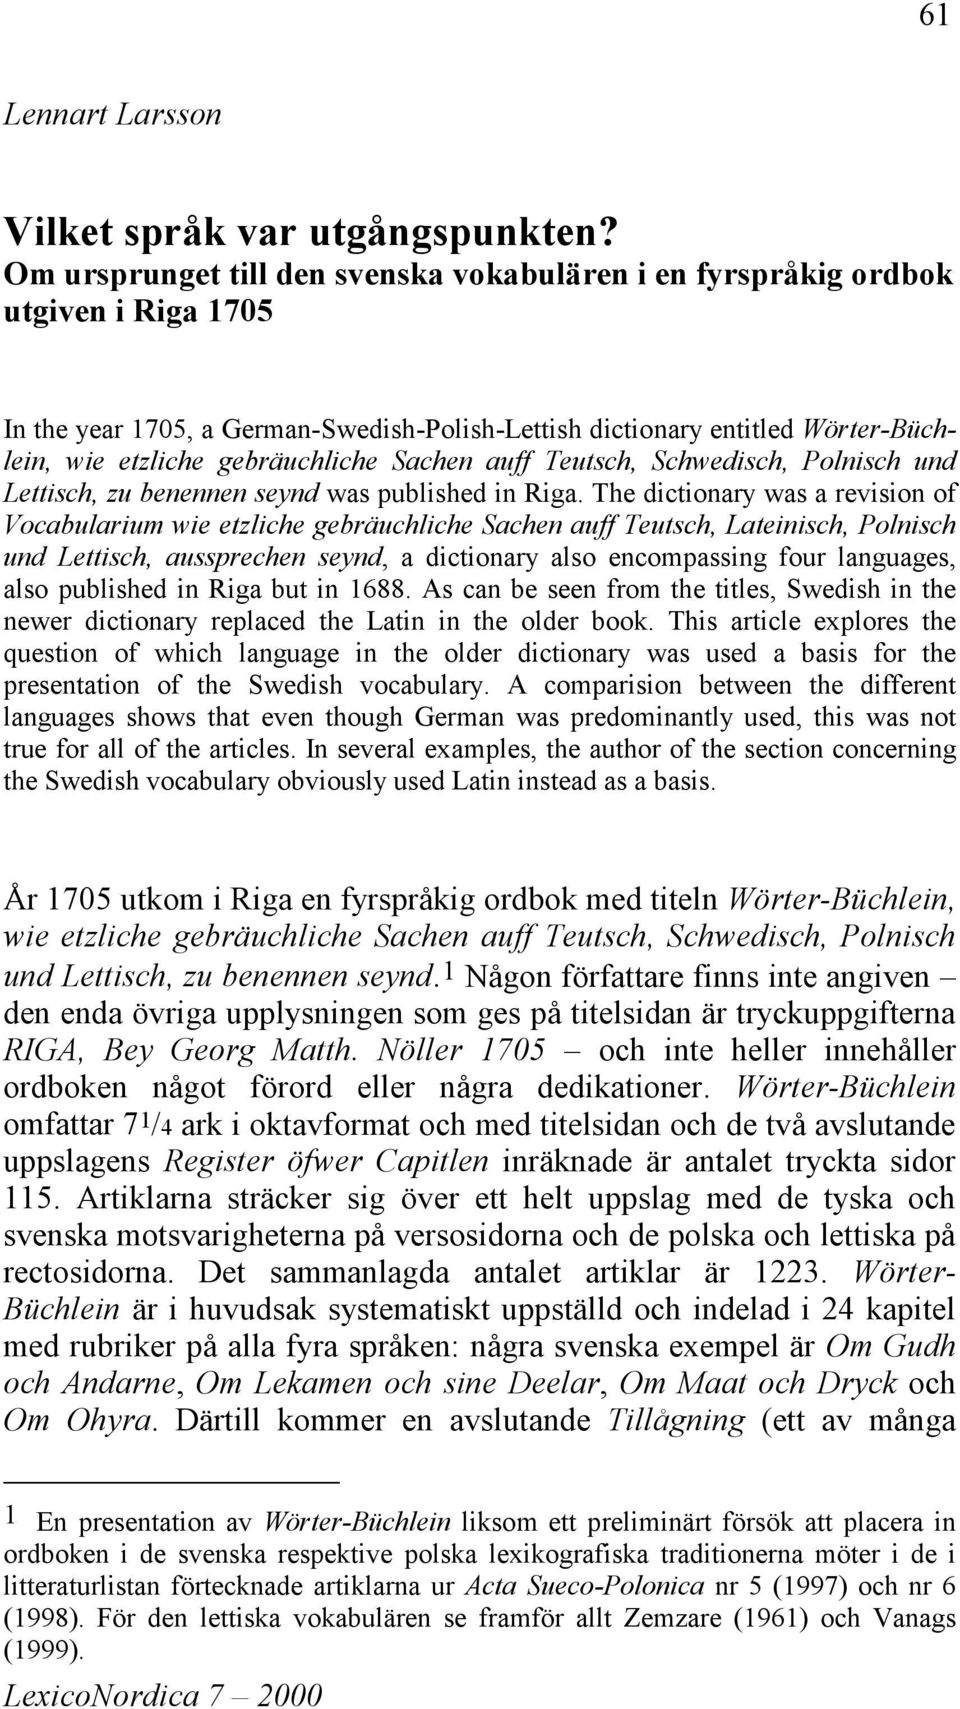 Sachen auff Teutsch, Schwedisch, Polnisch und Lettisch, zu benennen seynd was published in Riga.